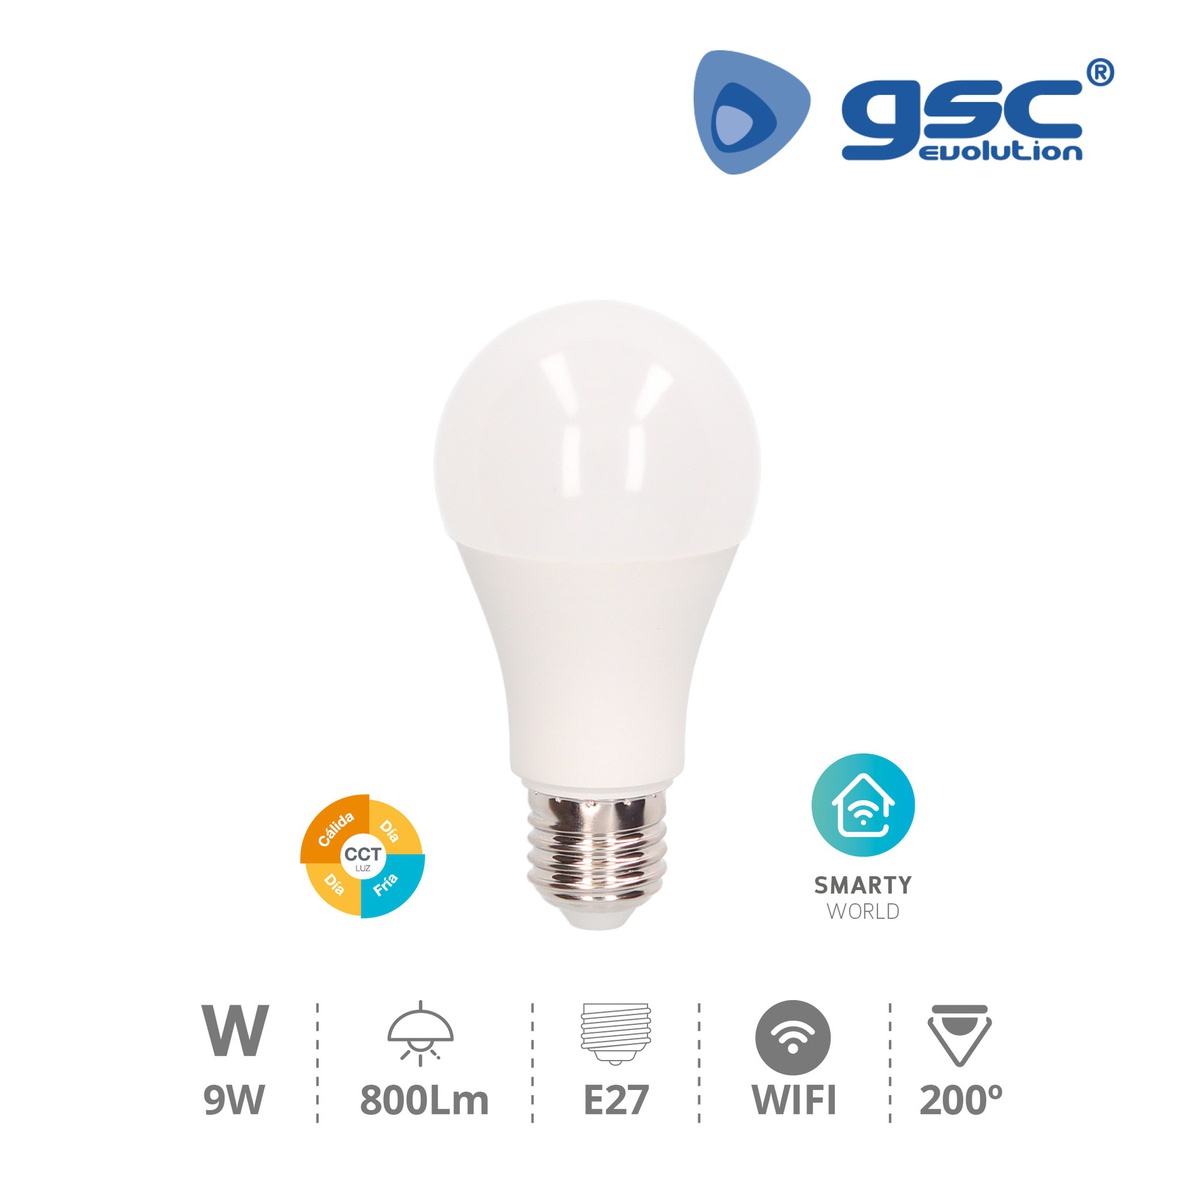 Bombilla LED estándar inteligente vía wifi y bluetooth 9W E27 CTT Regulable